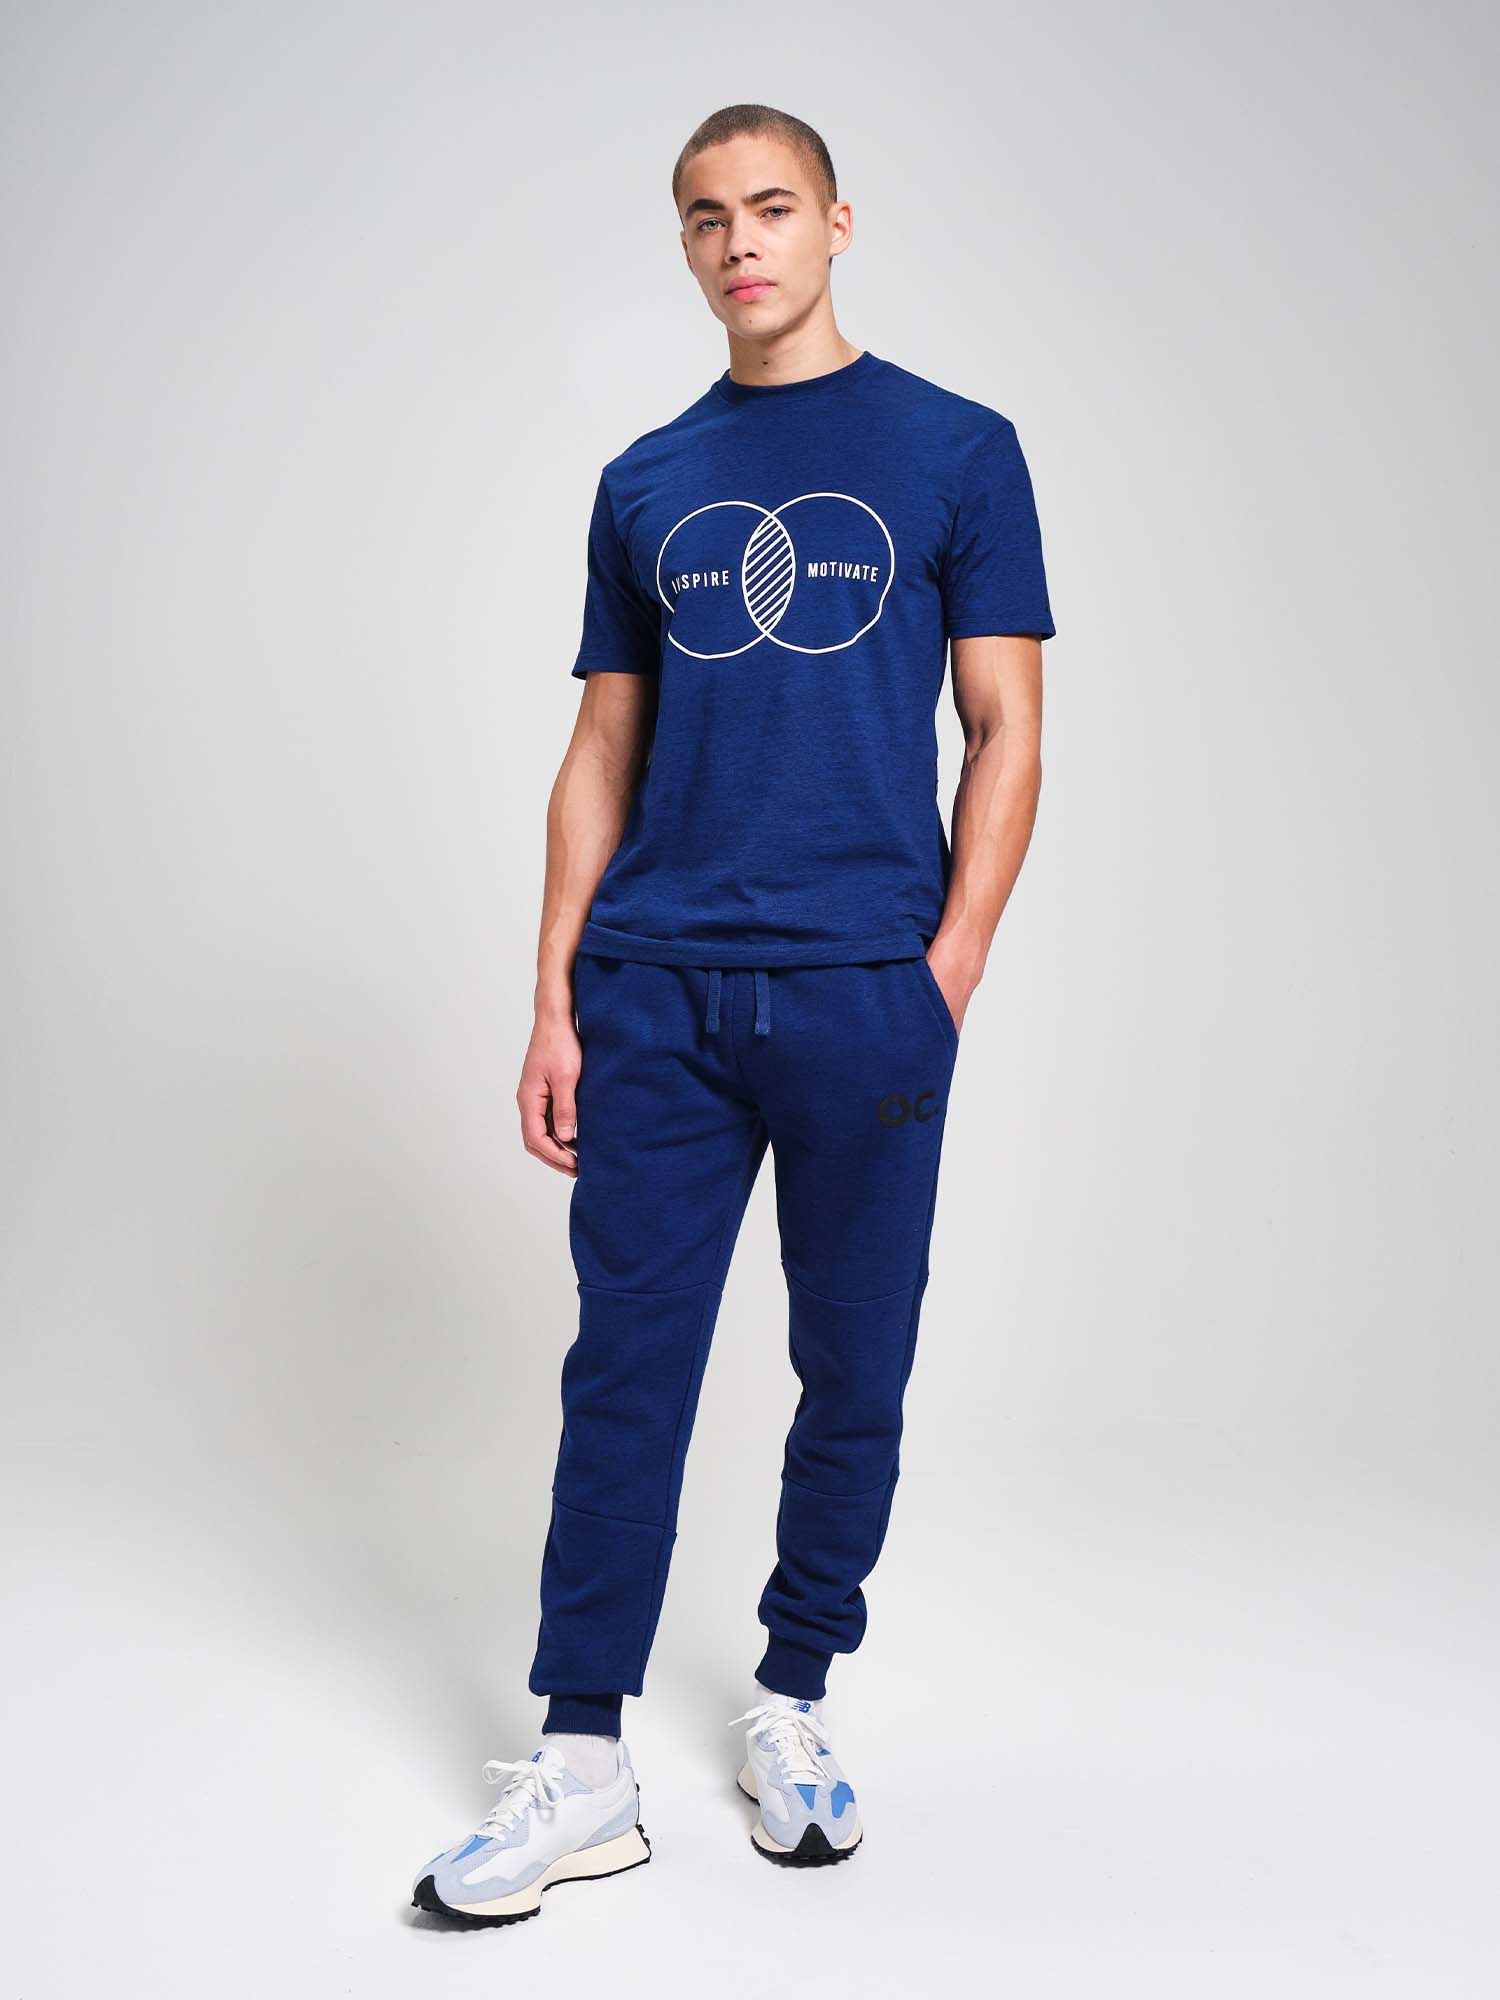 Inspire T-Shirt - Cobalt Blue – Original Creator